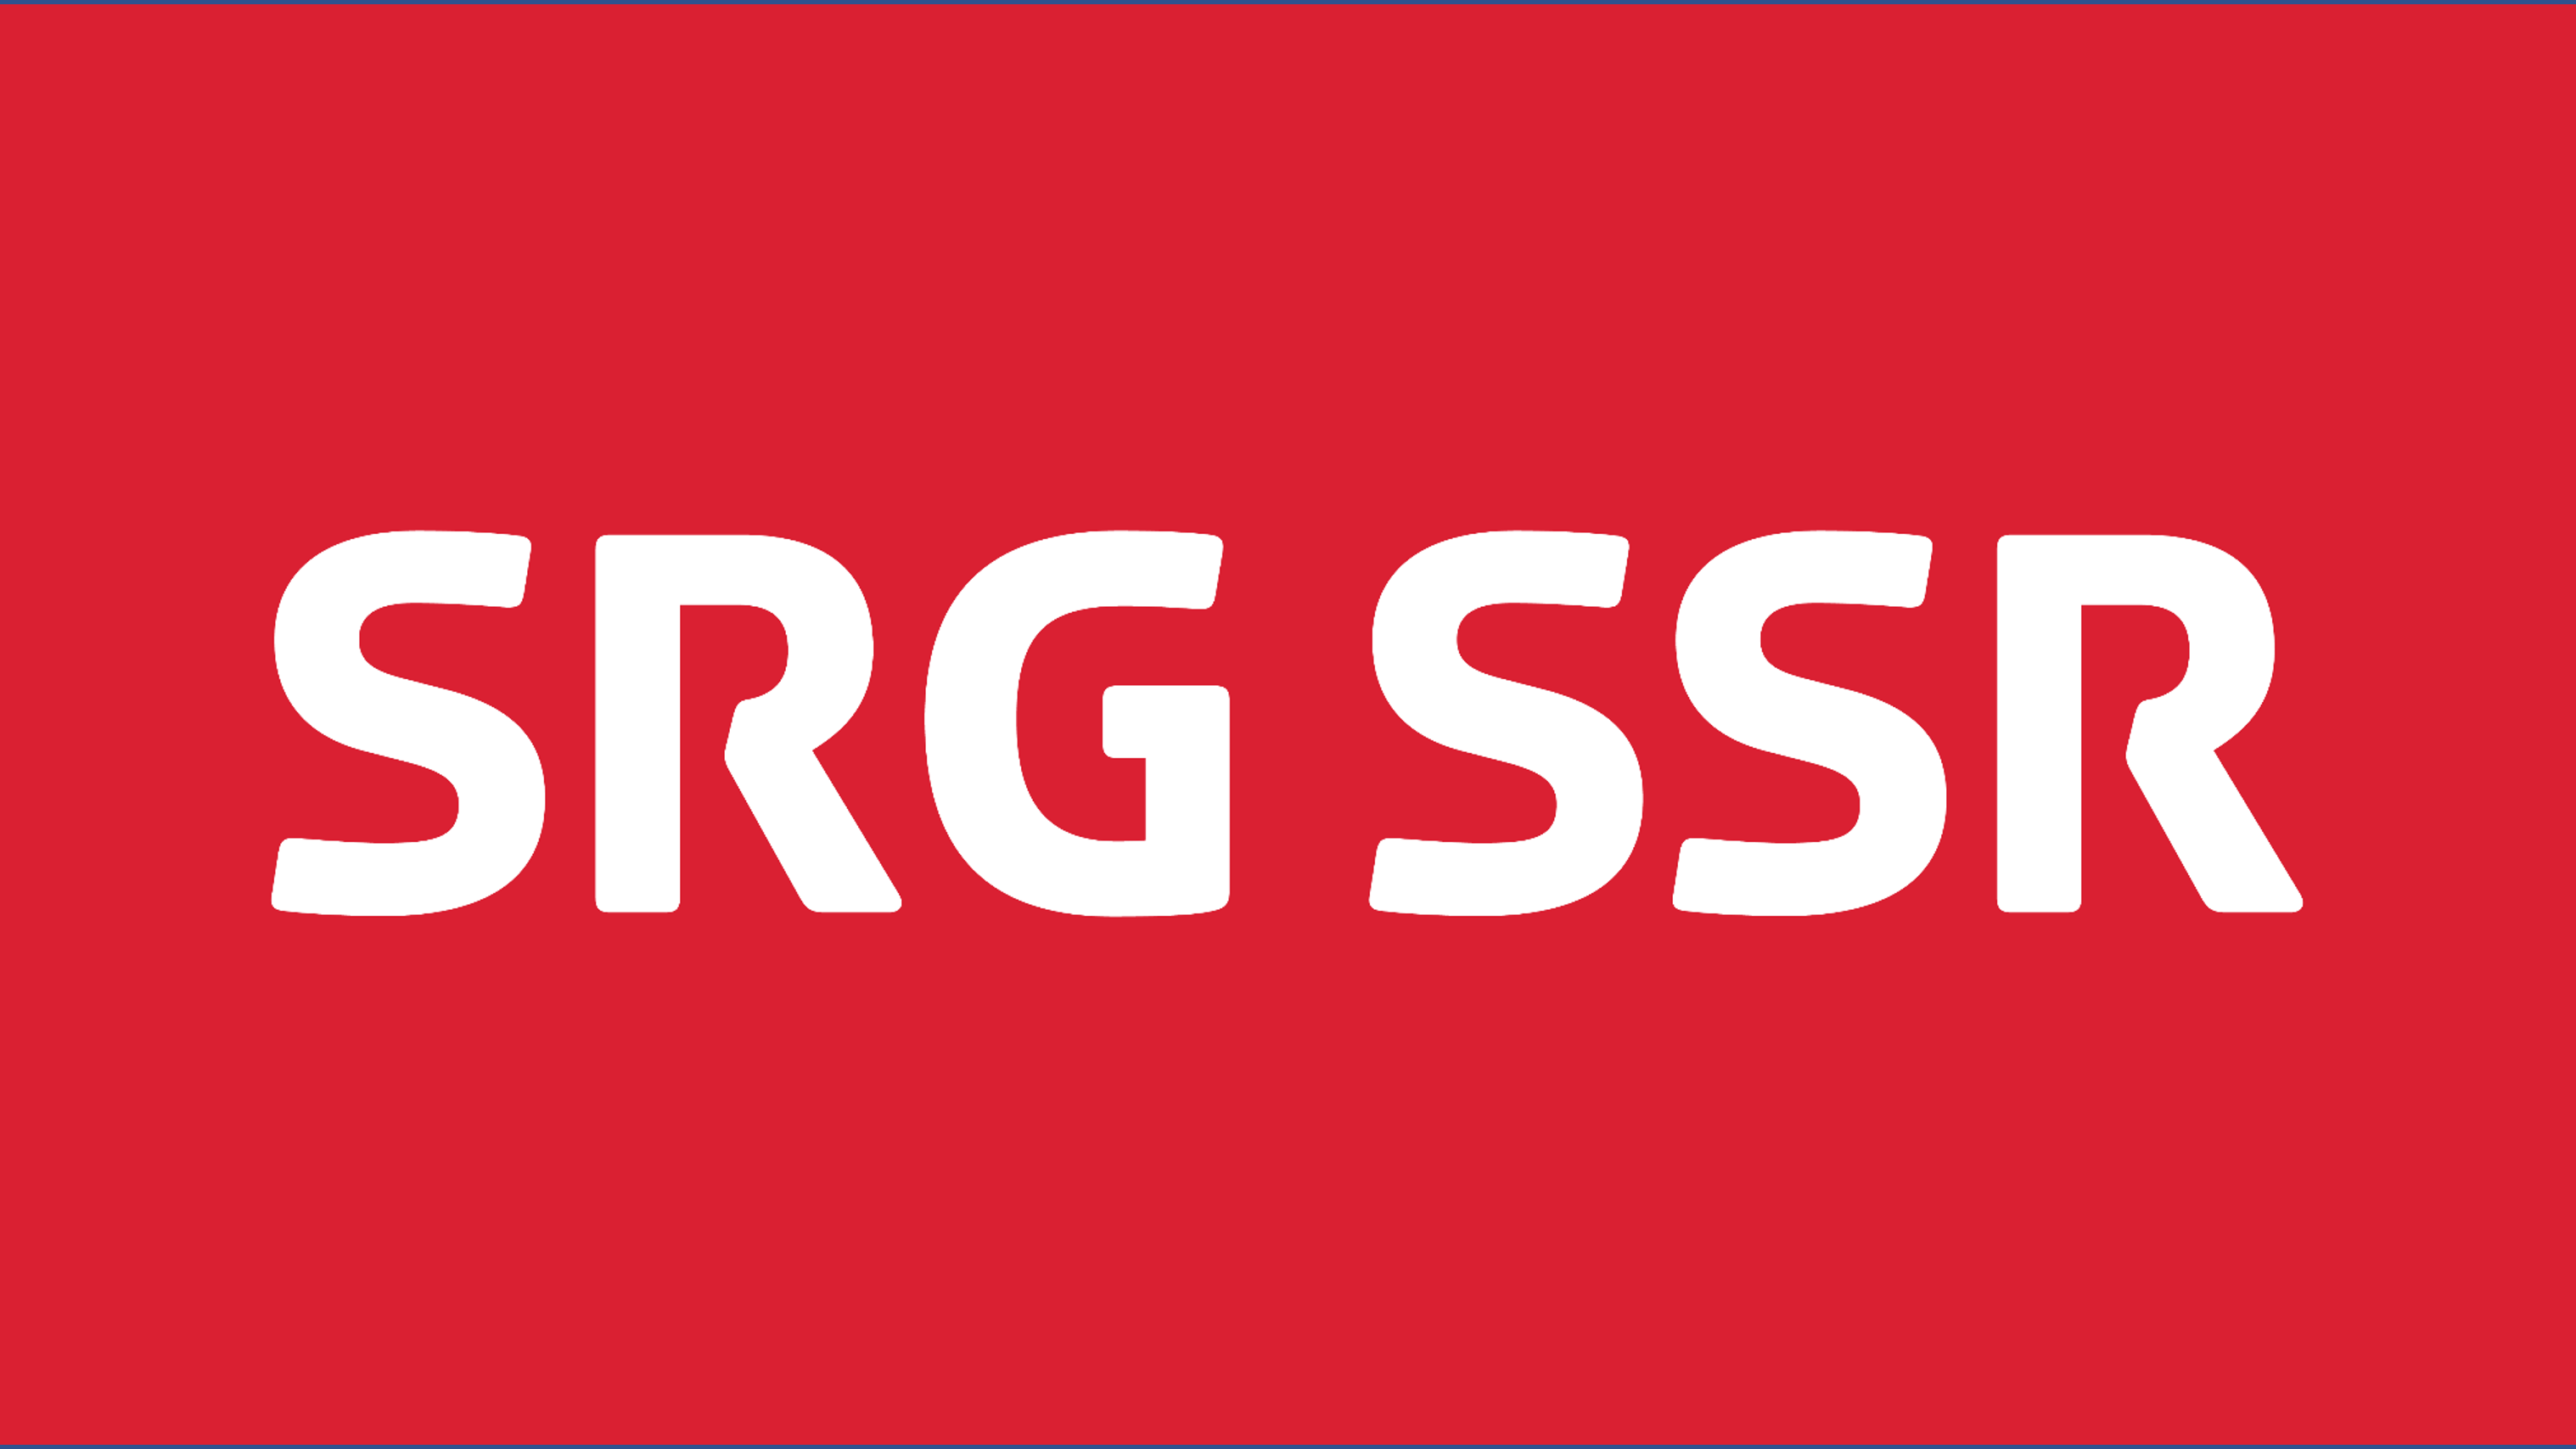 Cosa significa la sigla SRG SSR?